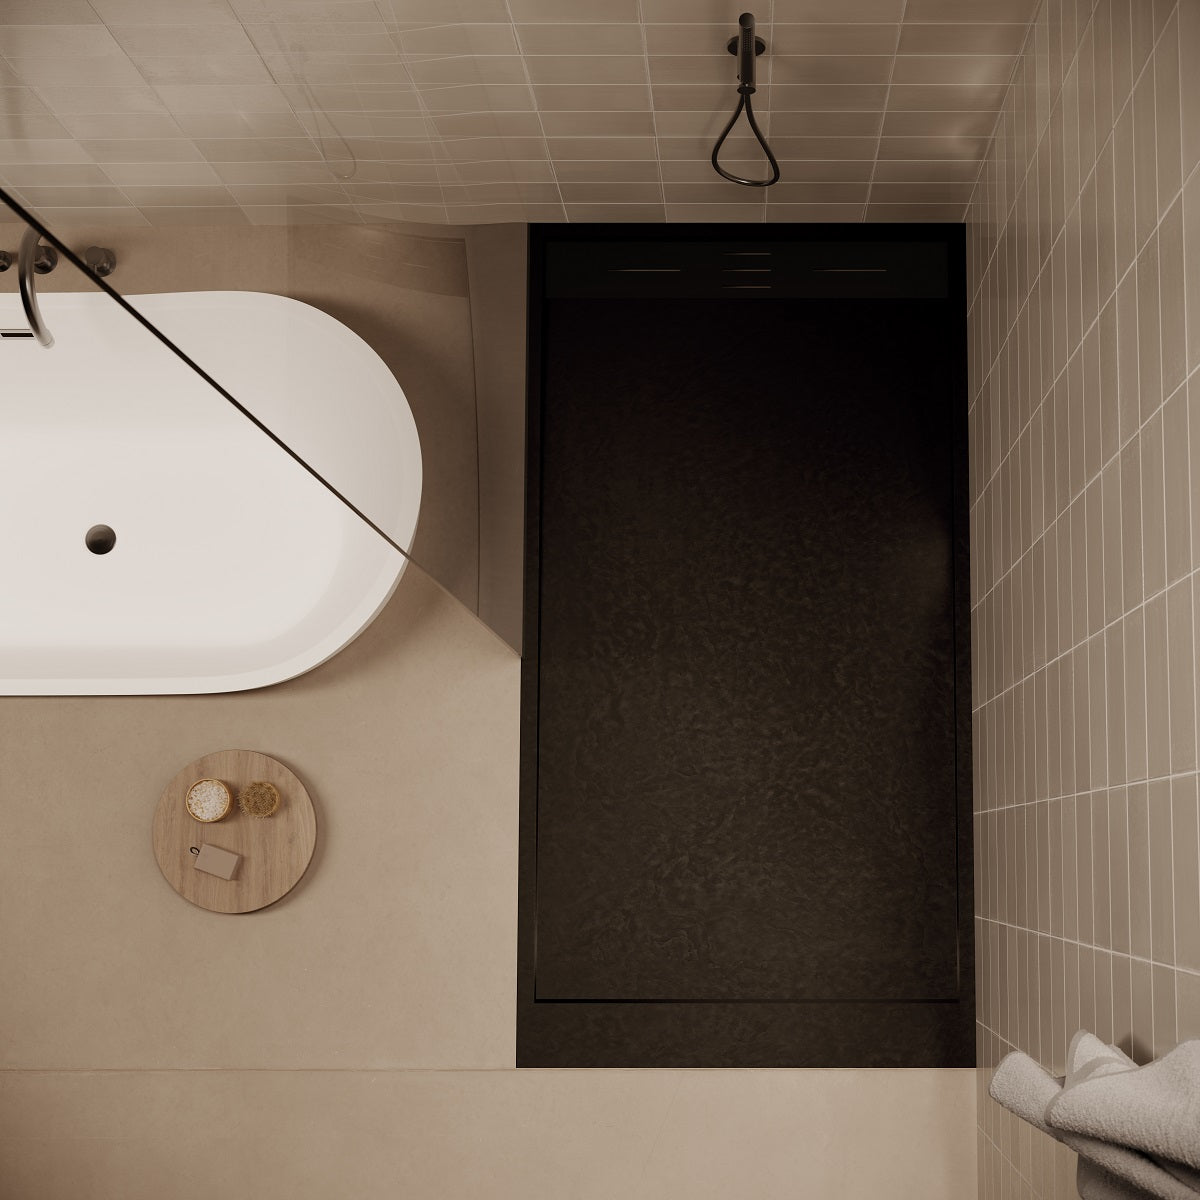 Bonde horizontale VALENTIN pour receveurs de douche – Le Monde du Bain